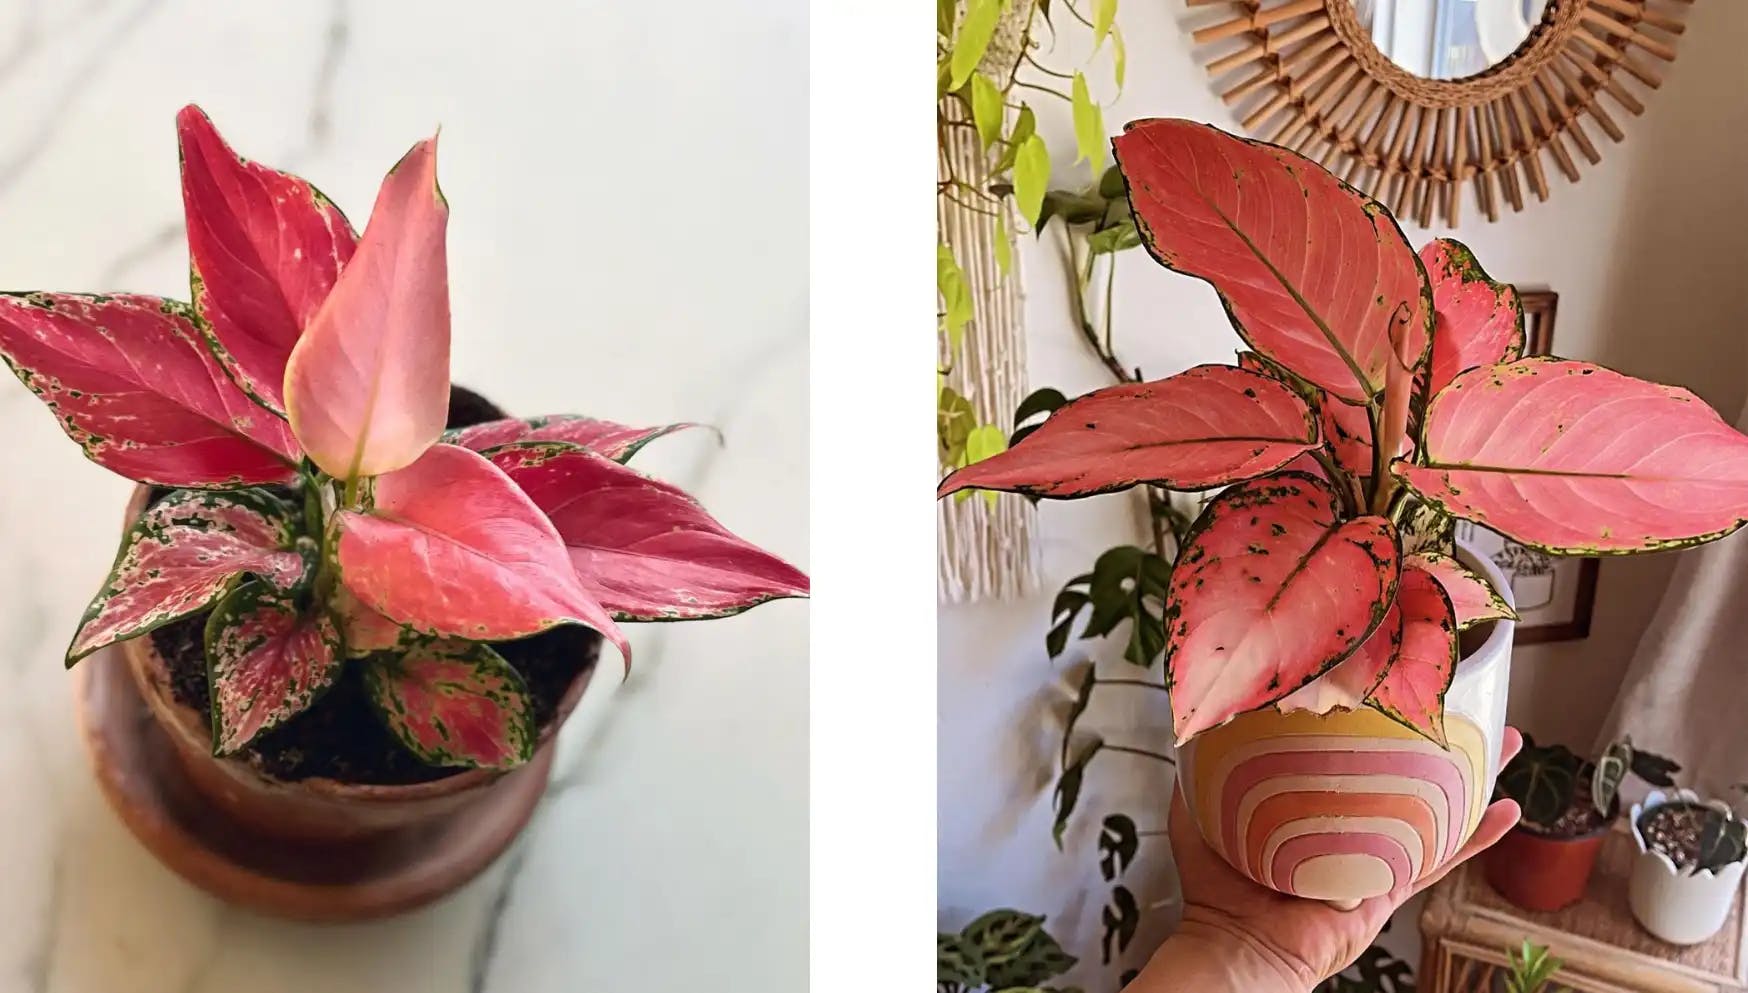 De stad Aap Cirkel 10 roze kamerplanten die jouw huis zullen opfleuren! | PLNTS.com